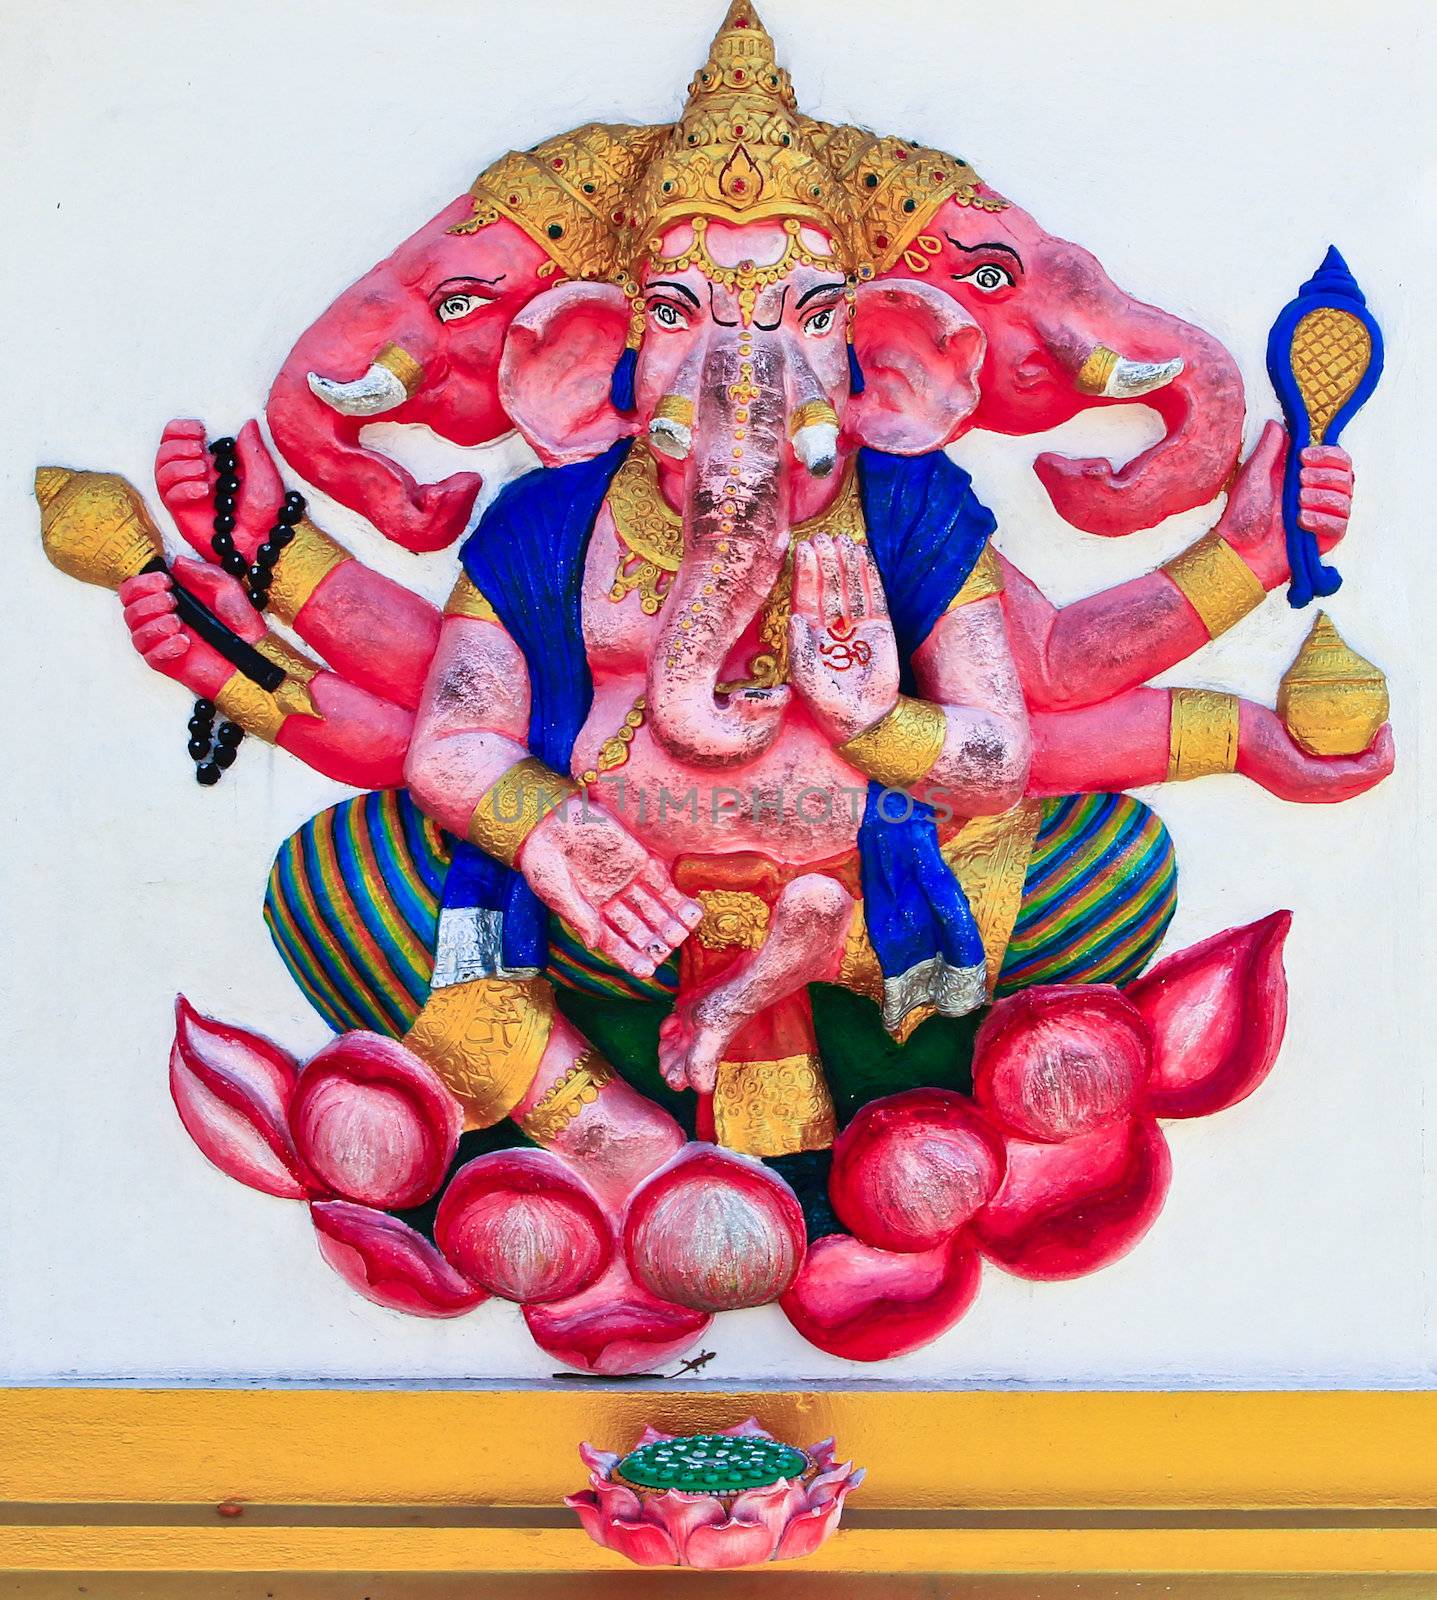 Ganesh Elephant-headed god Chachoengsao, Thailand